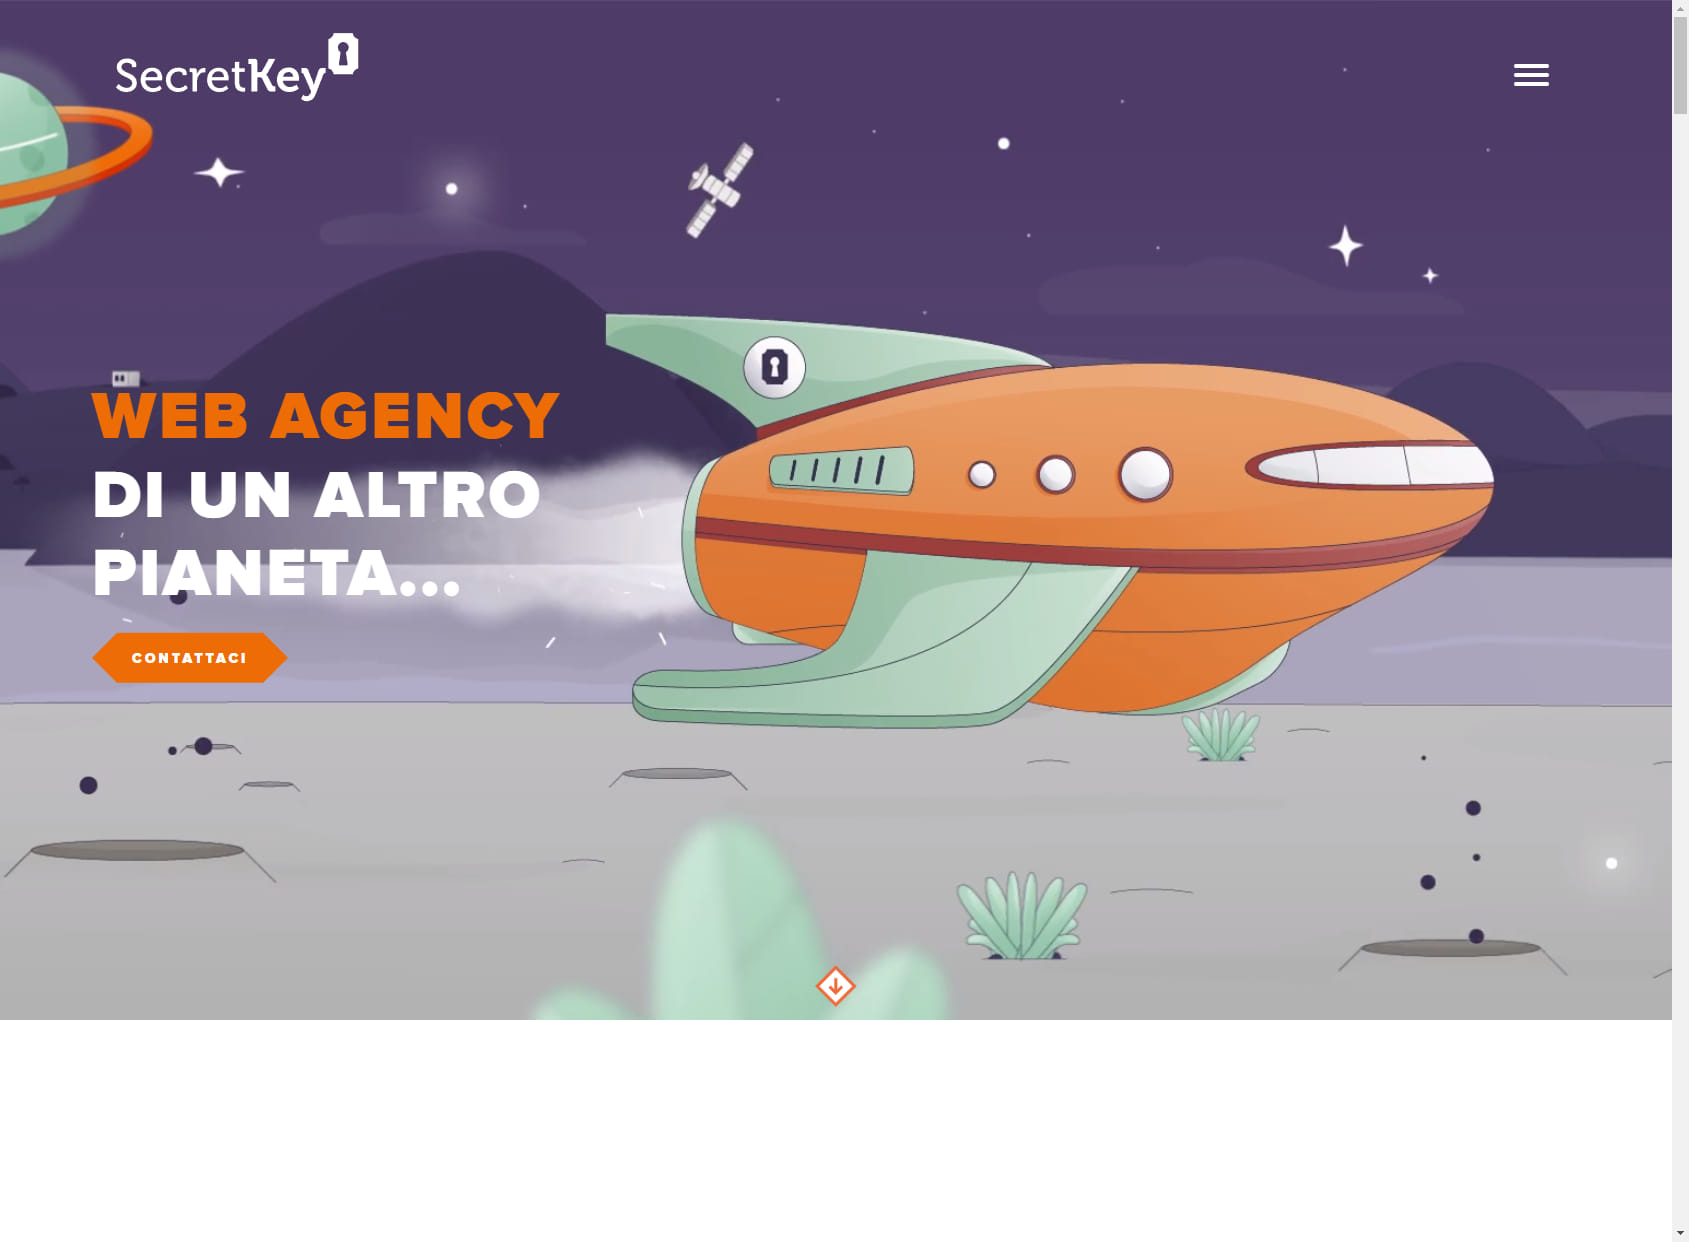 Secret Key Web Agency